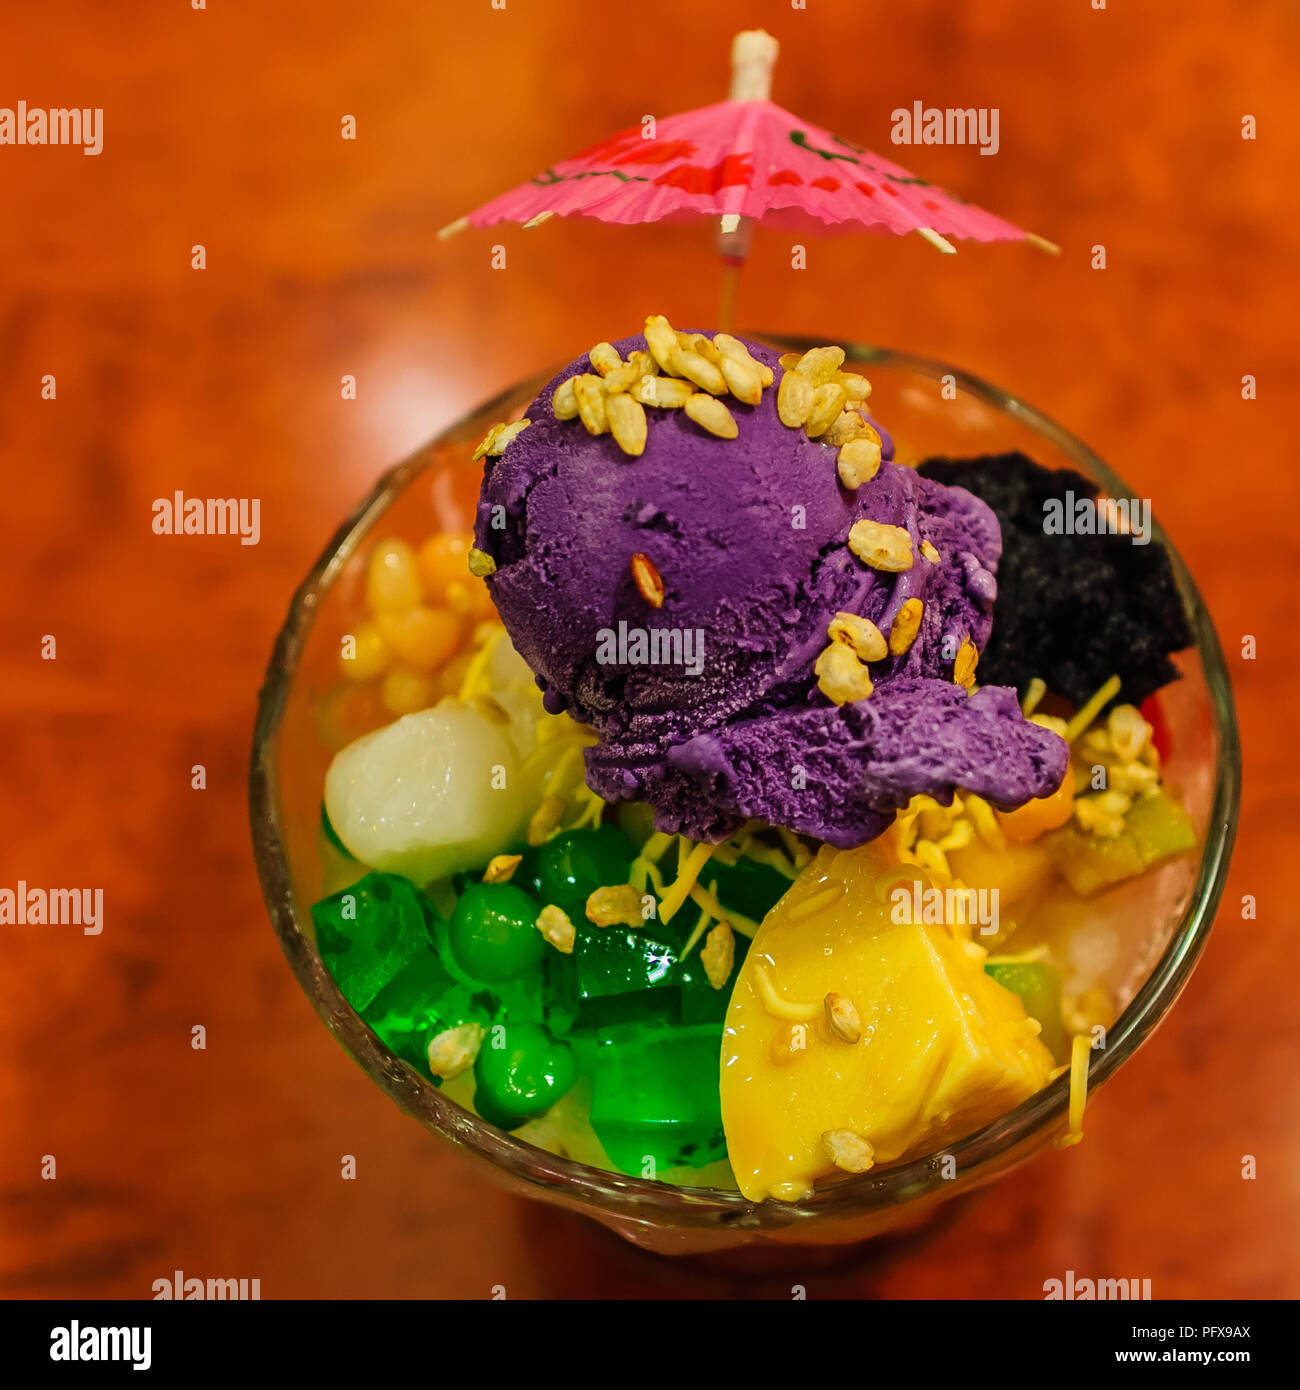 Philippine "halo" Halo - postre compuesto de shaved hielo y leche con diversos ingredientes : dulce de frijol, coco, sagú, agar gelatina, tubérculos y frutas. Foto de stock